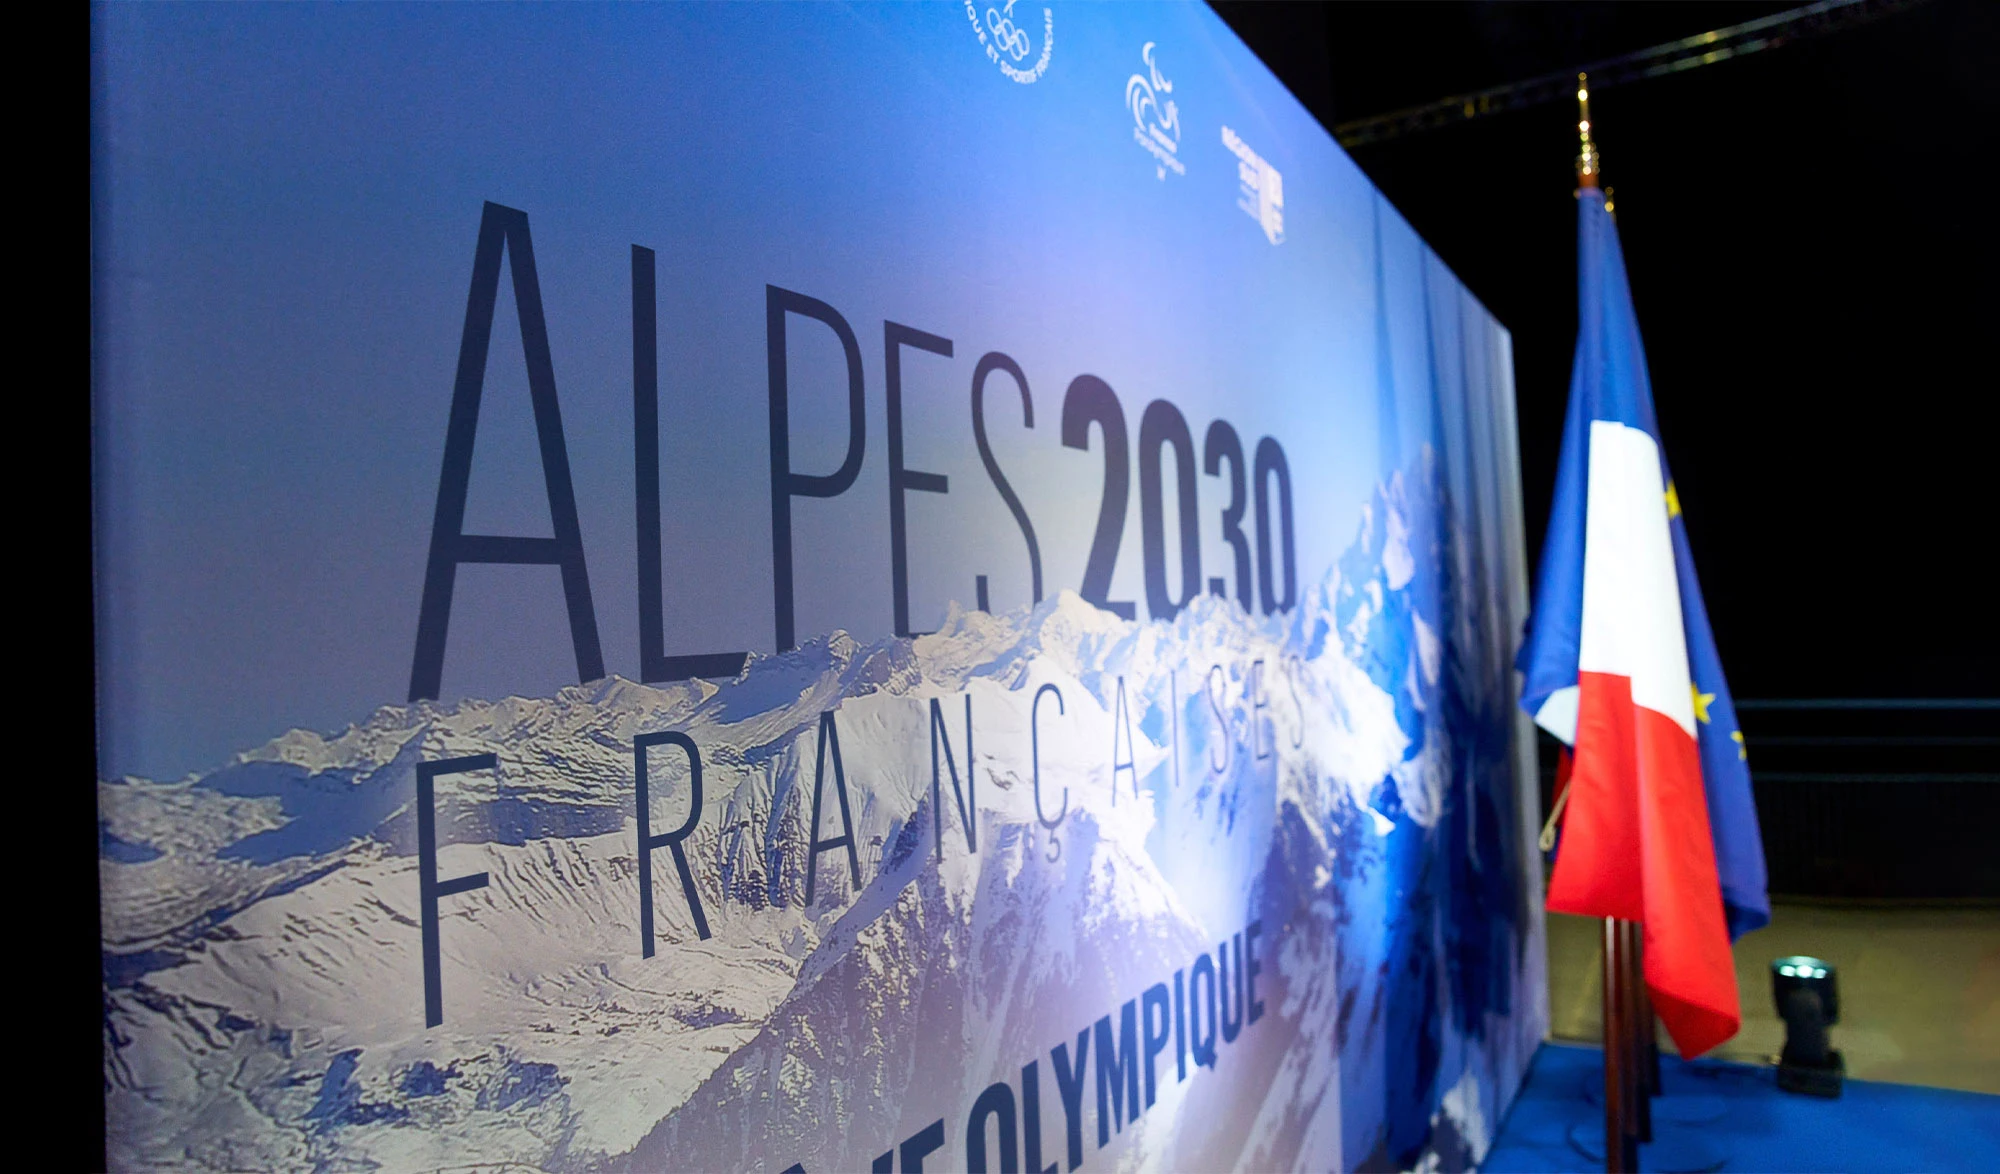 Alpes 20230